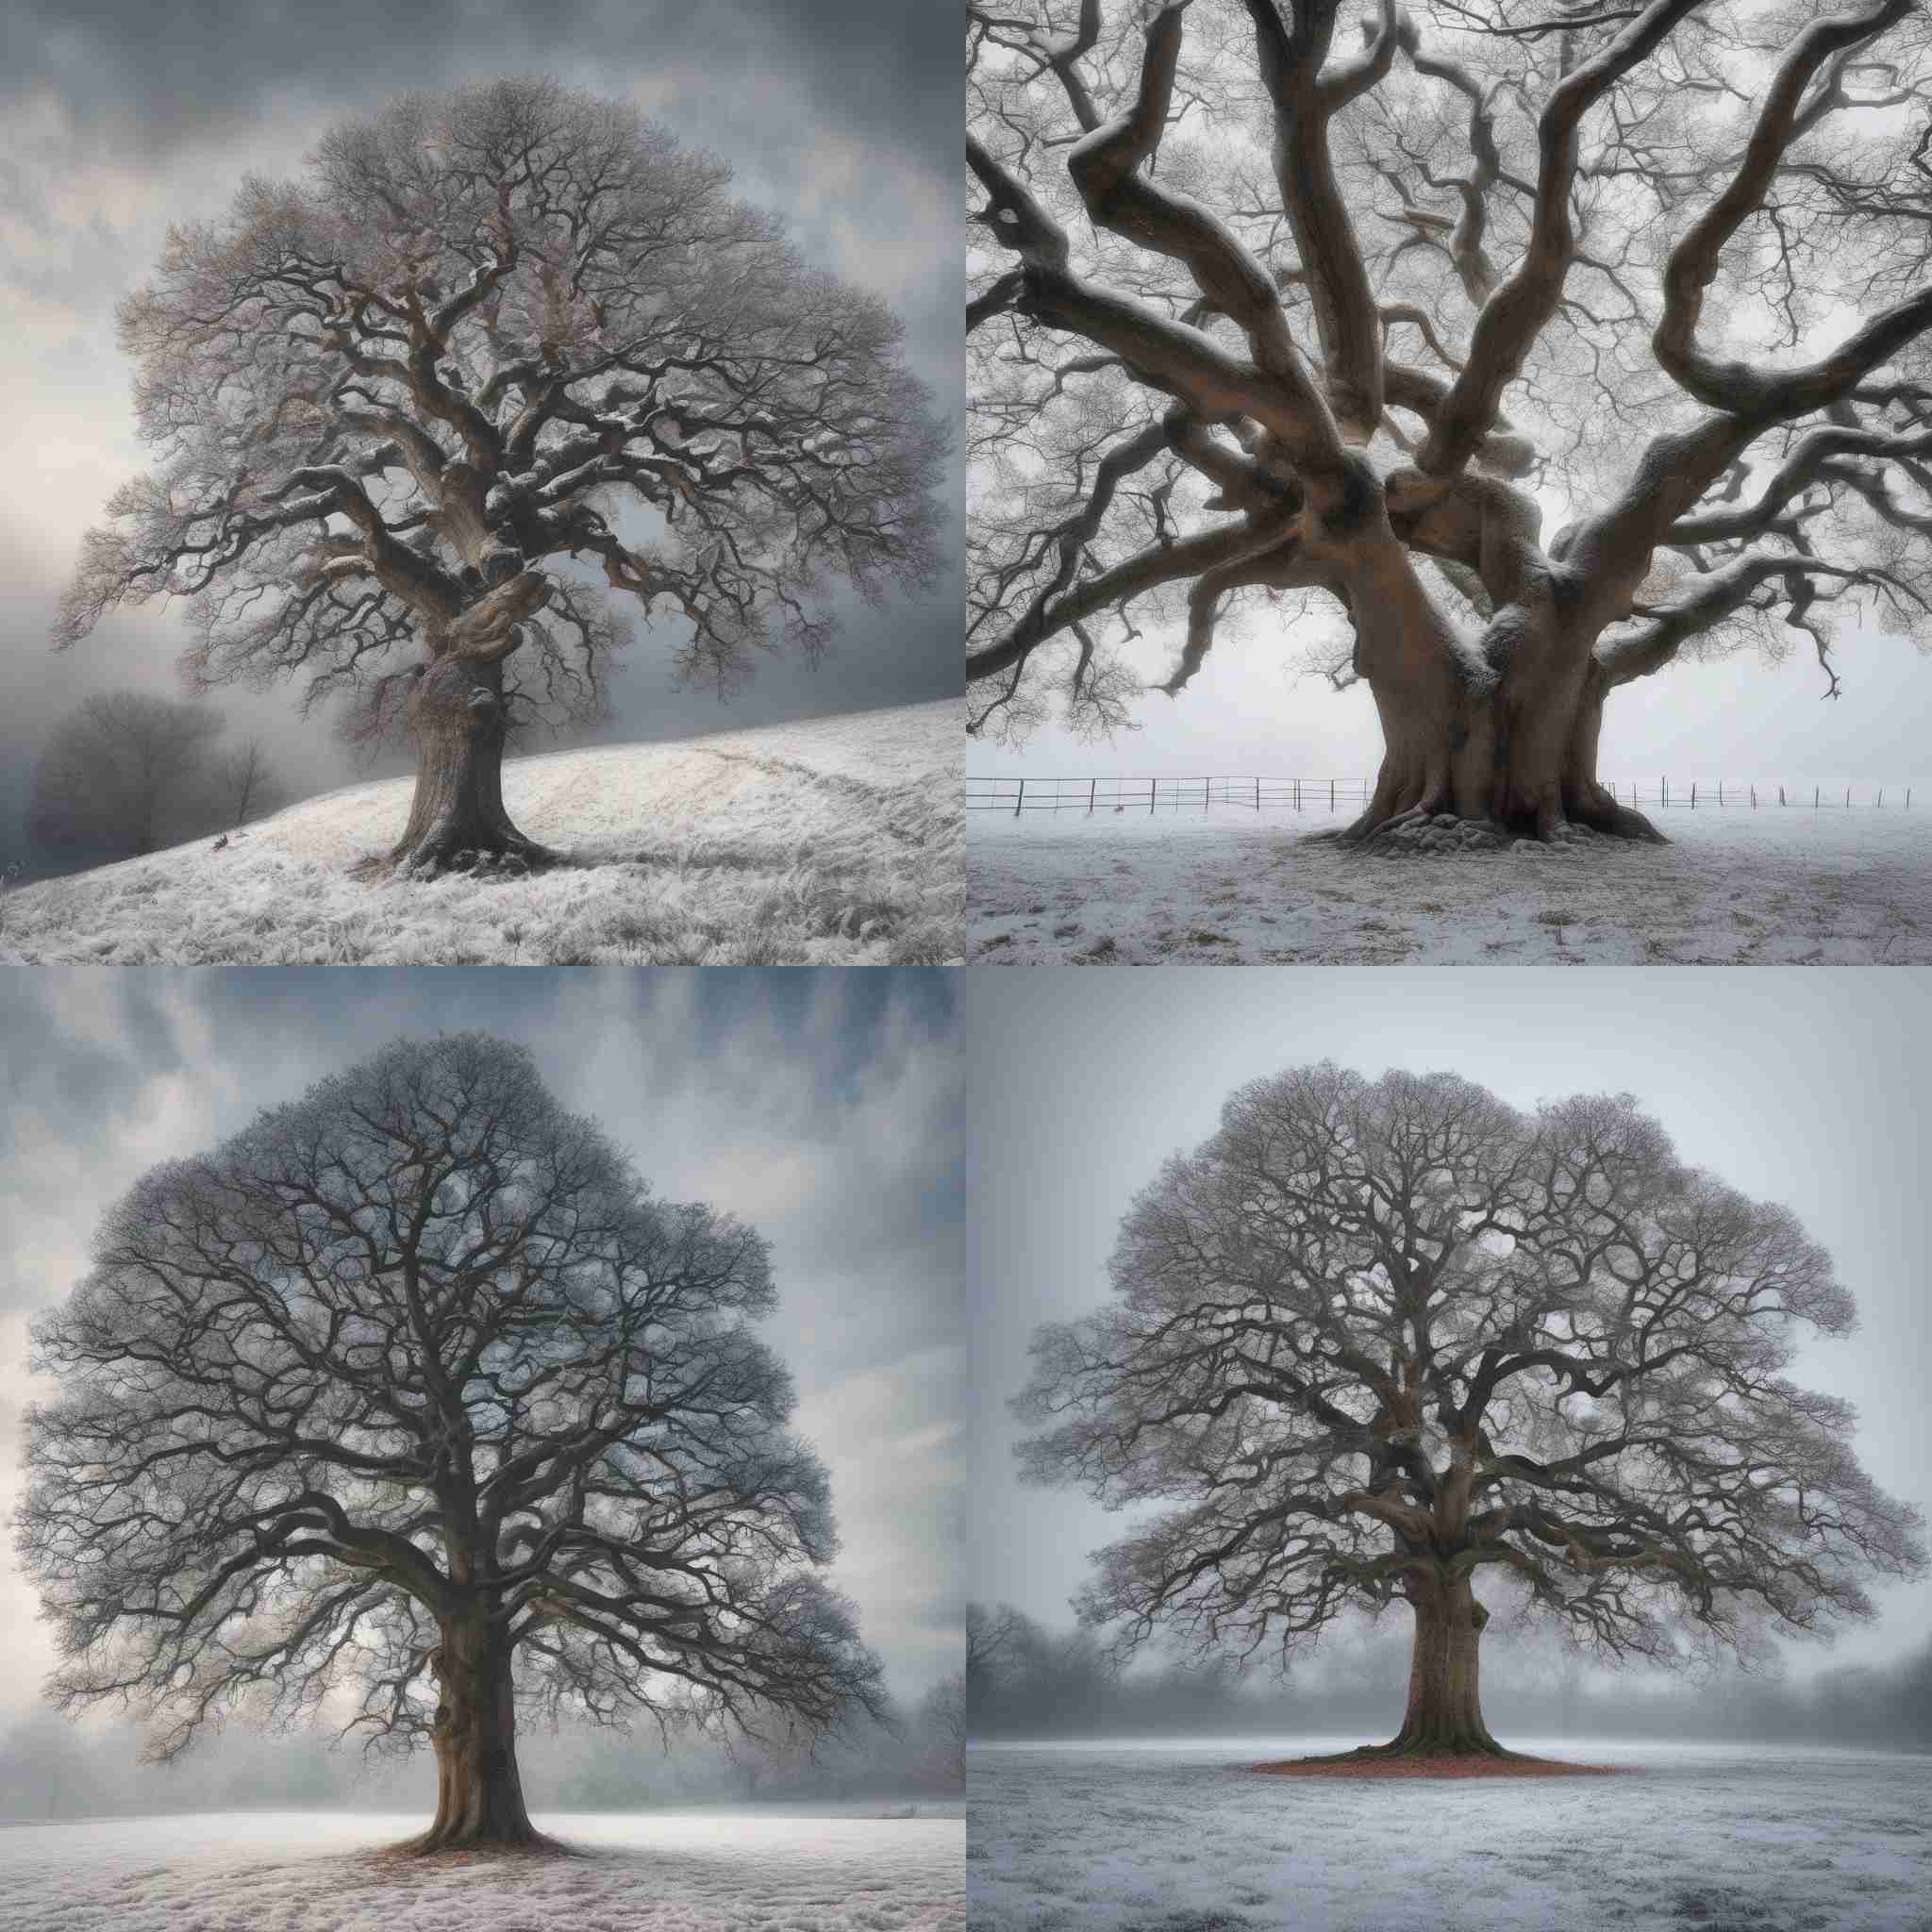 An oak tree in winter